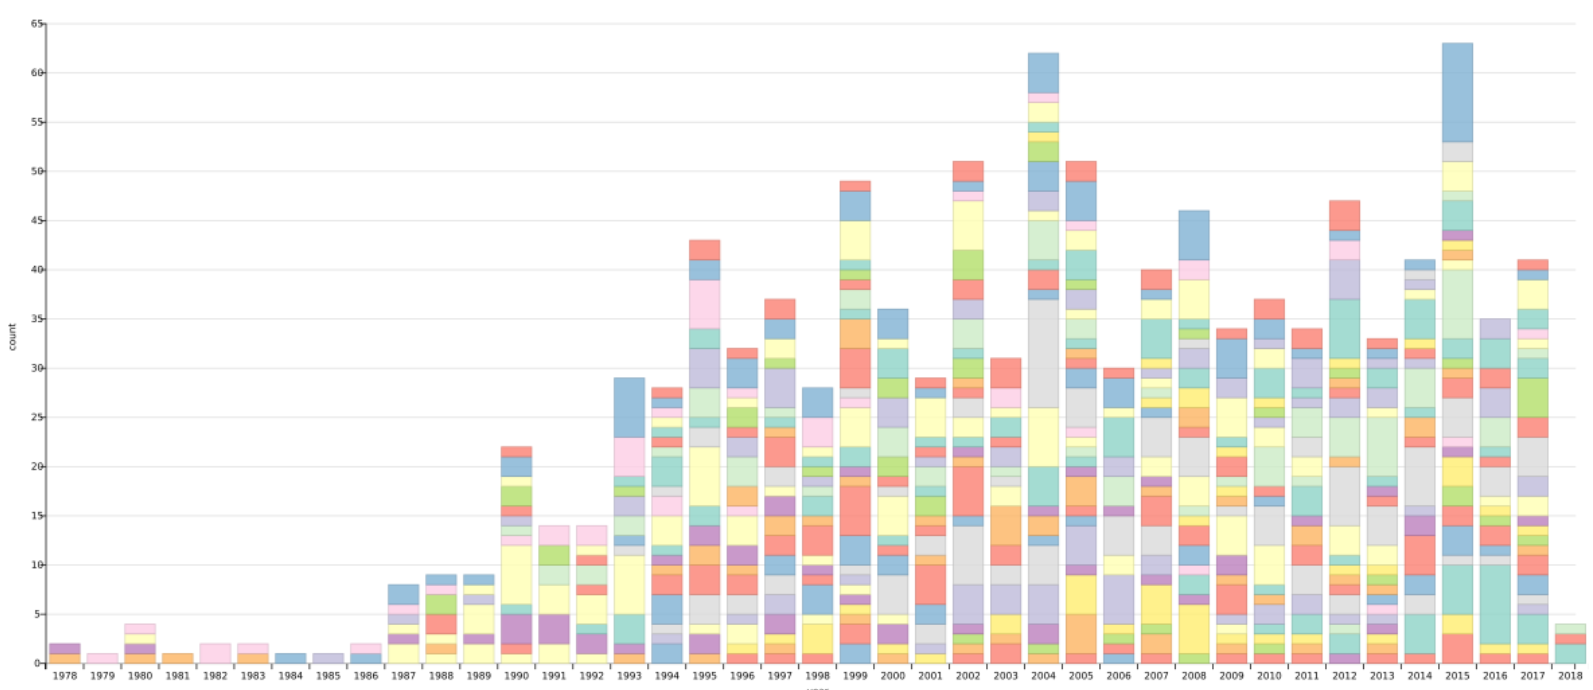 Gráfico de barras de las publicaciones de los miembros del IATEXT desde 1978 hasta 2018